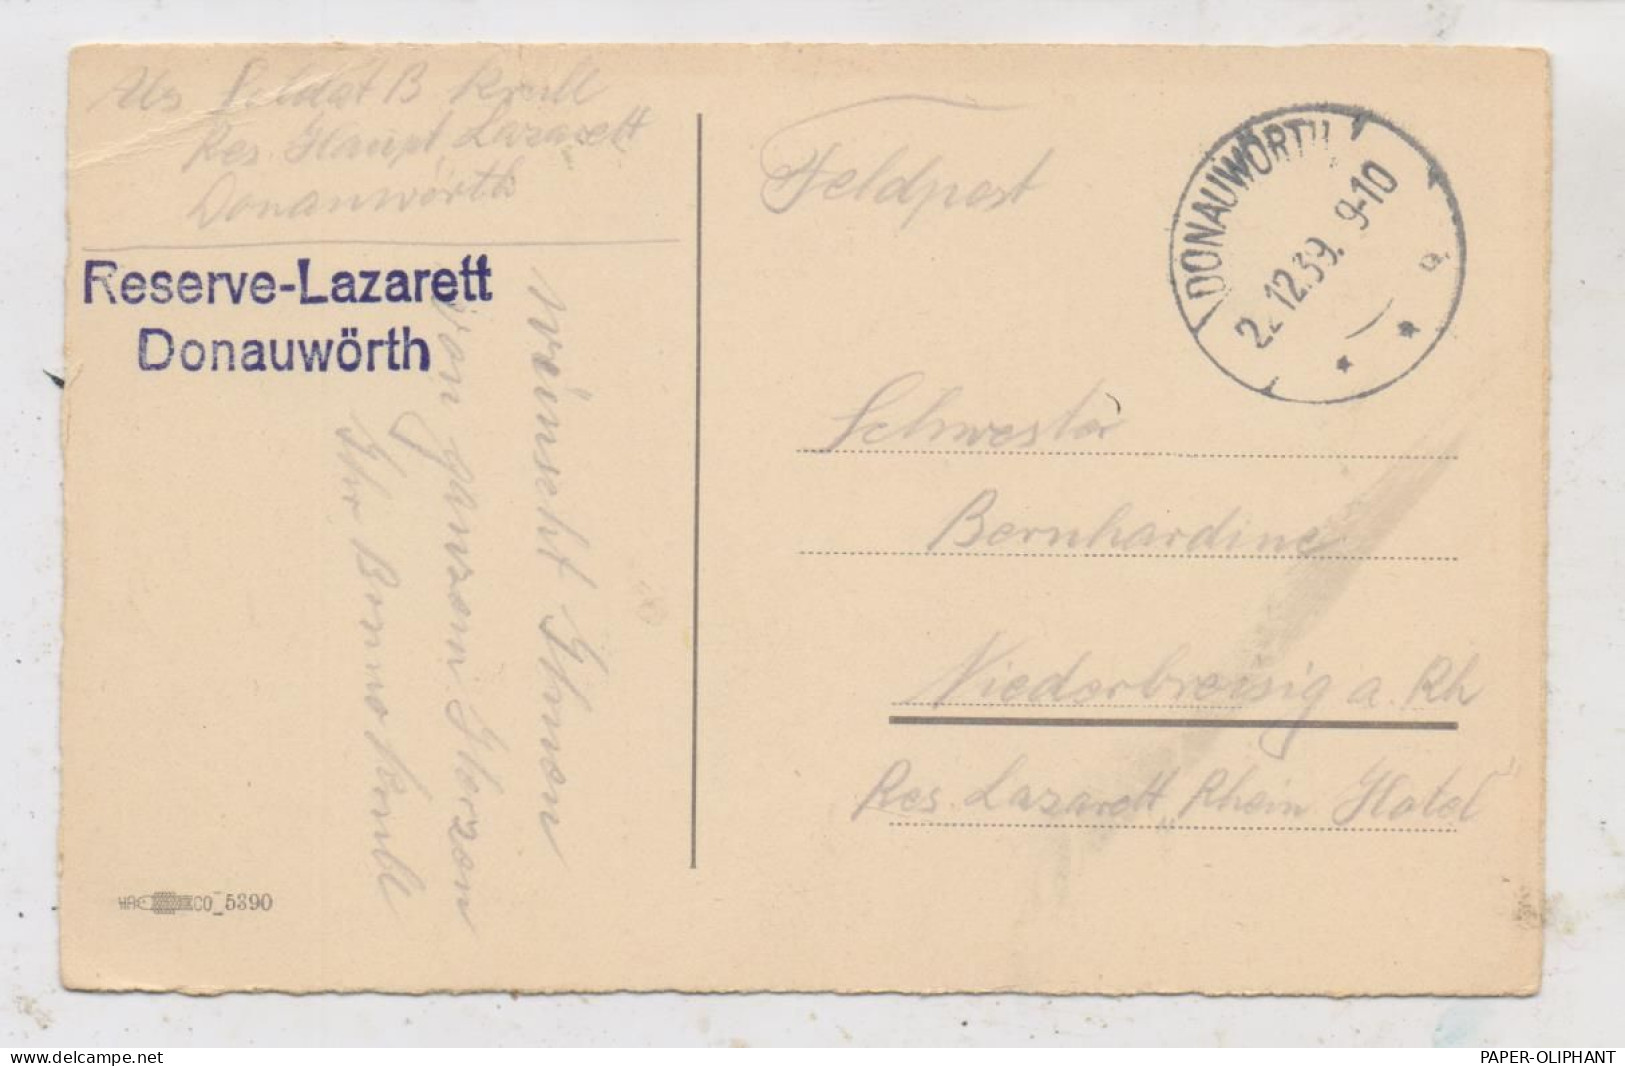 8850 DONAUWÖRTH, Postgeschichte, Feldpost Dezember 1939, Reserve Lazarett - Donauwoerth